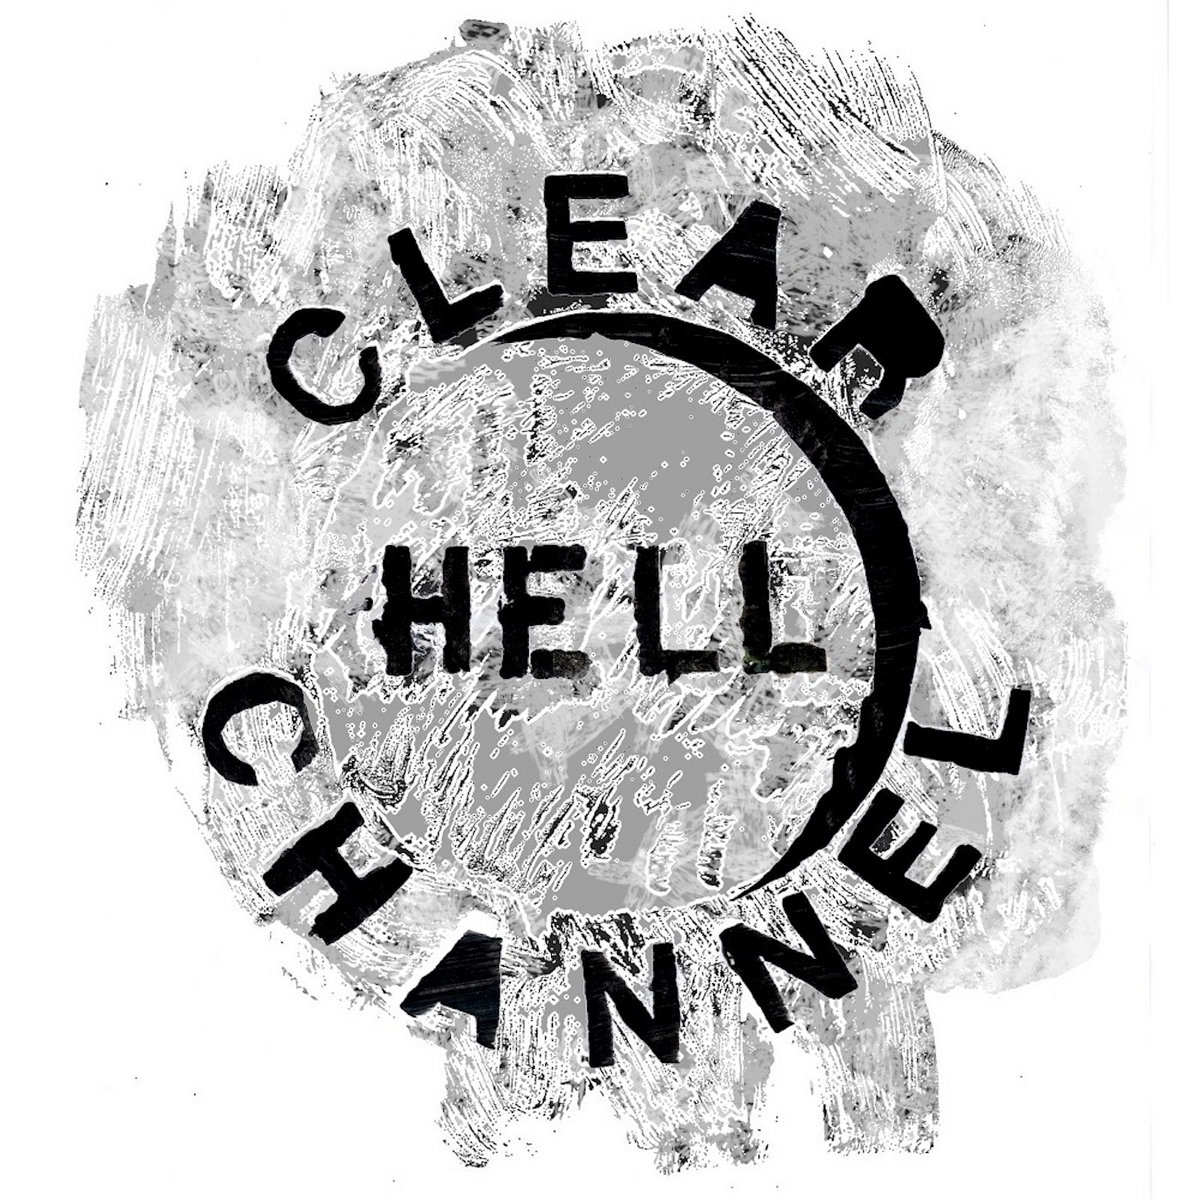 De clear. Clear channel.